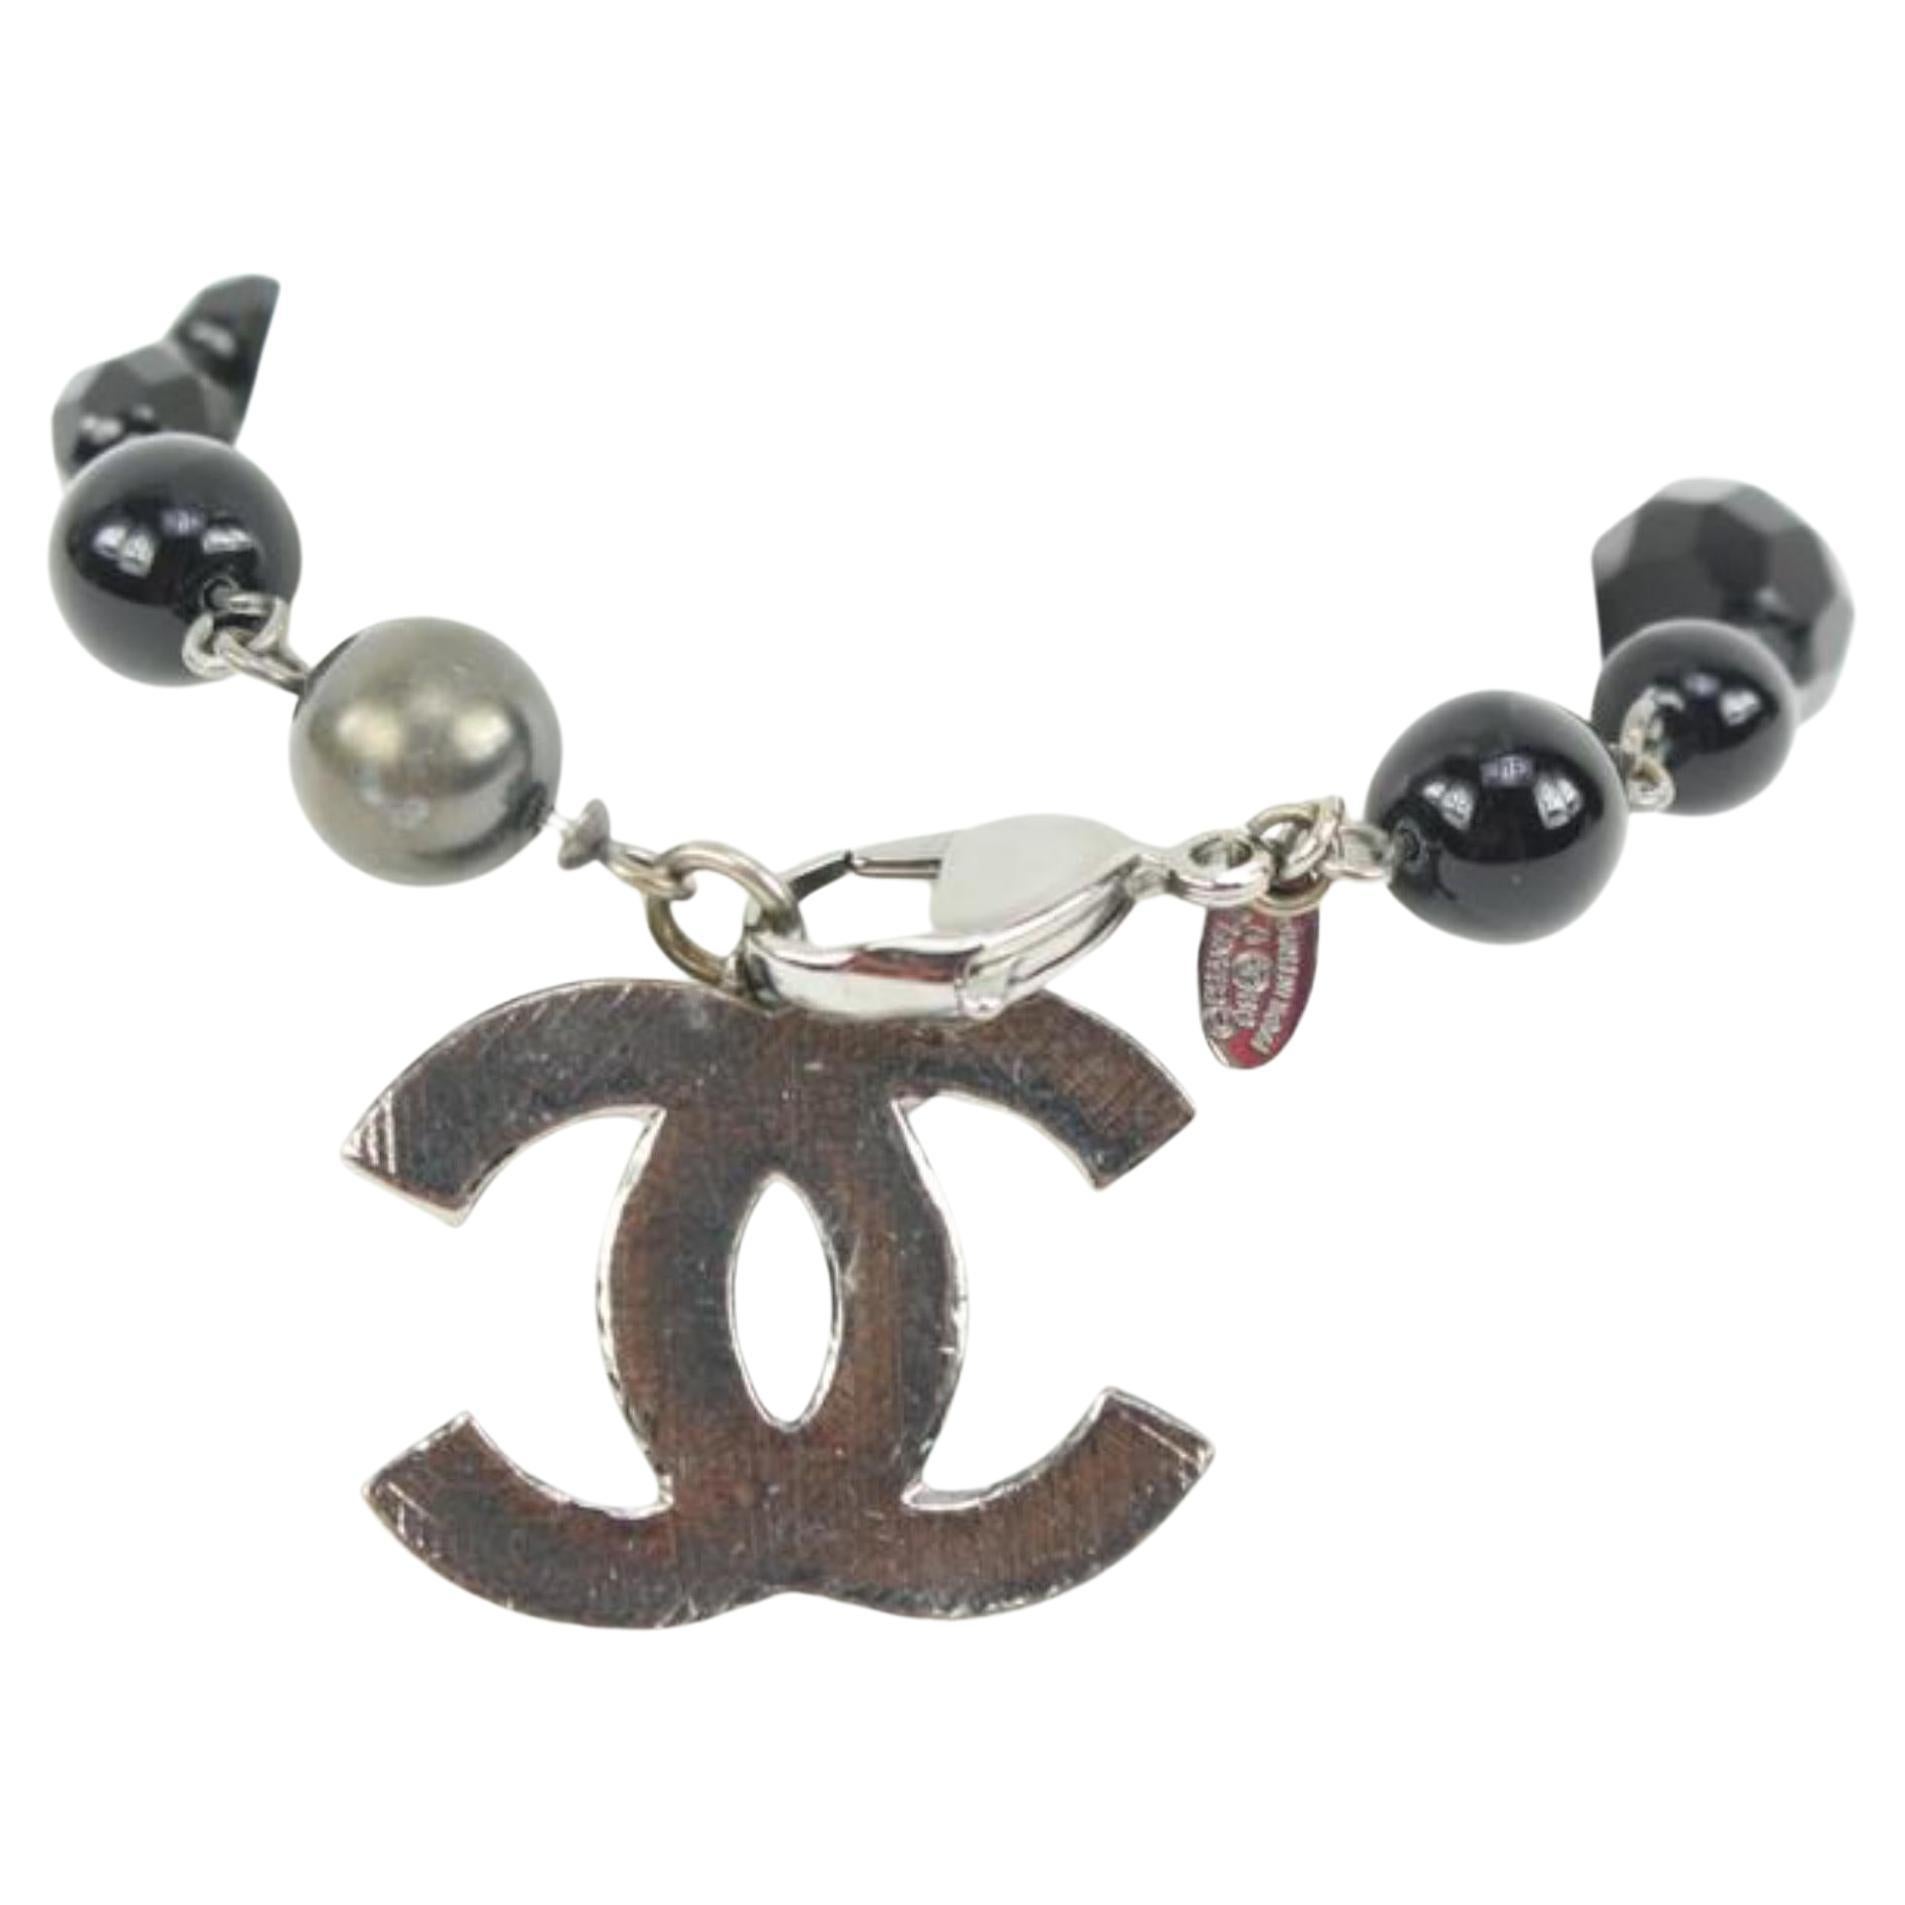 Chanel 09V Jumbo CC perles noires et chaîne argentée 33ck321s